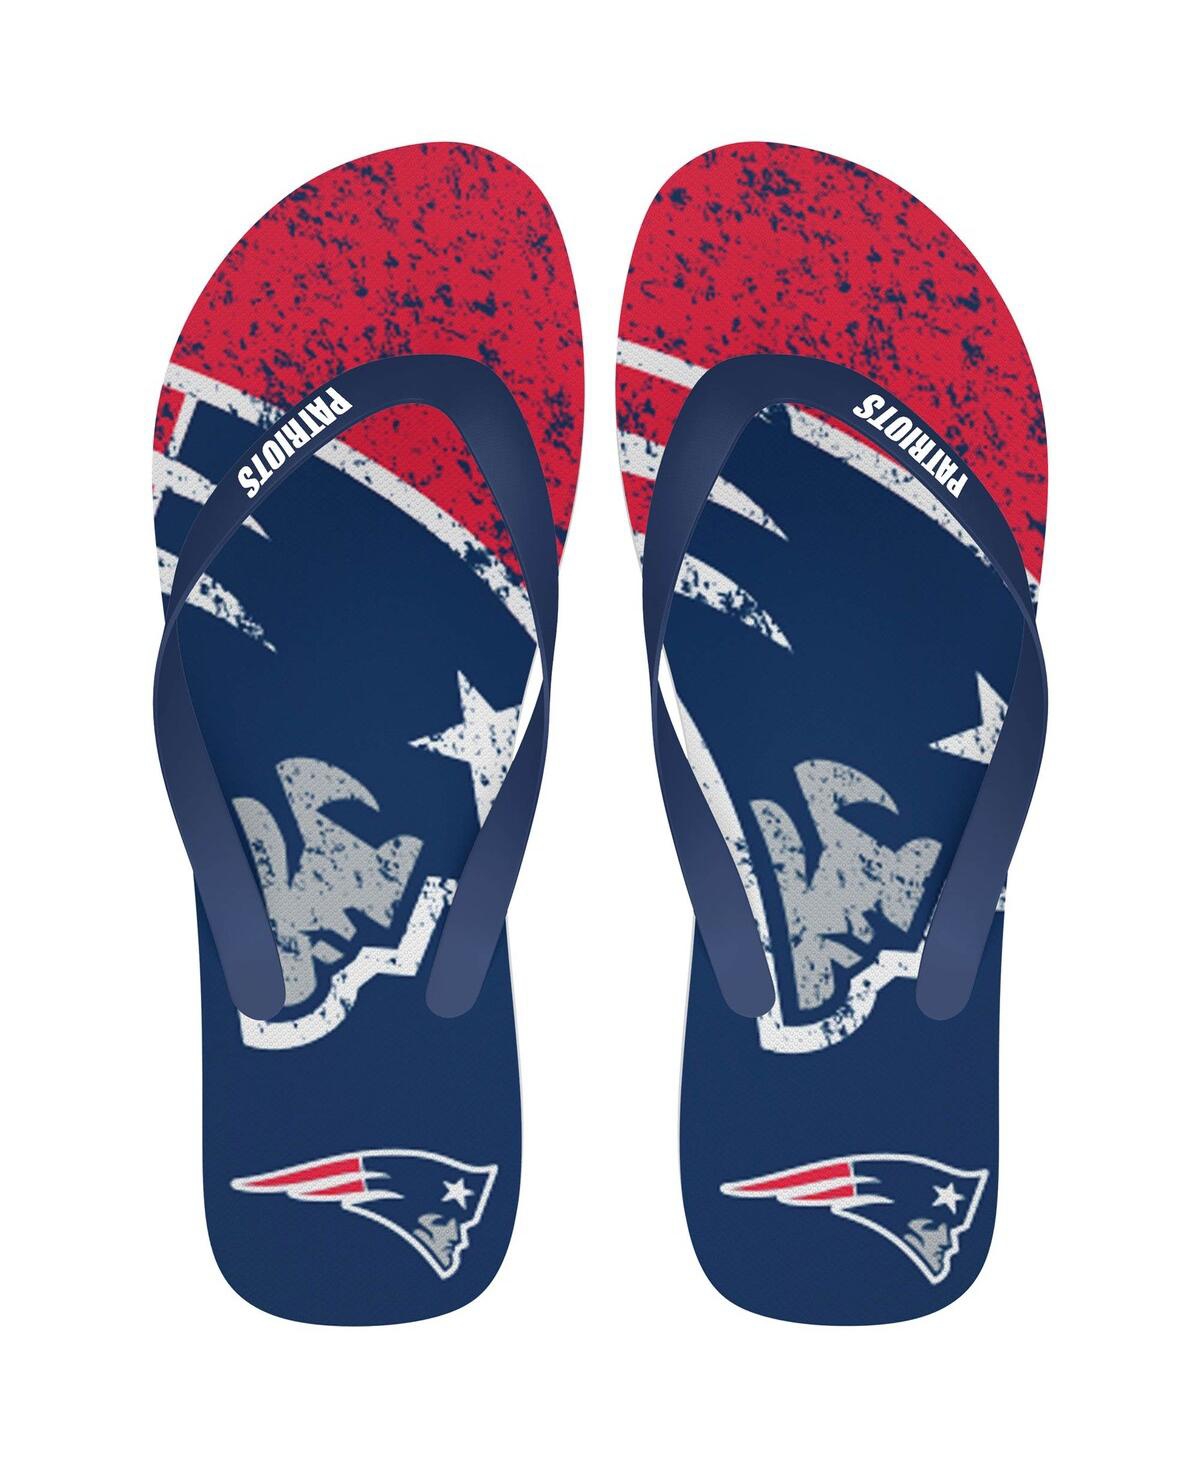 Men's and Women's New England Patriots Big Logo Flip-Flops - Navy